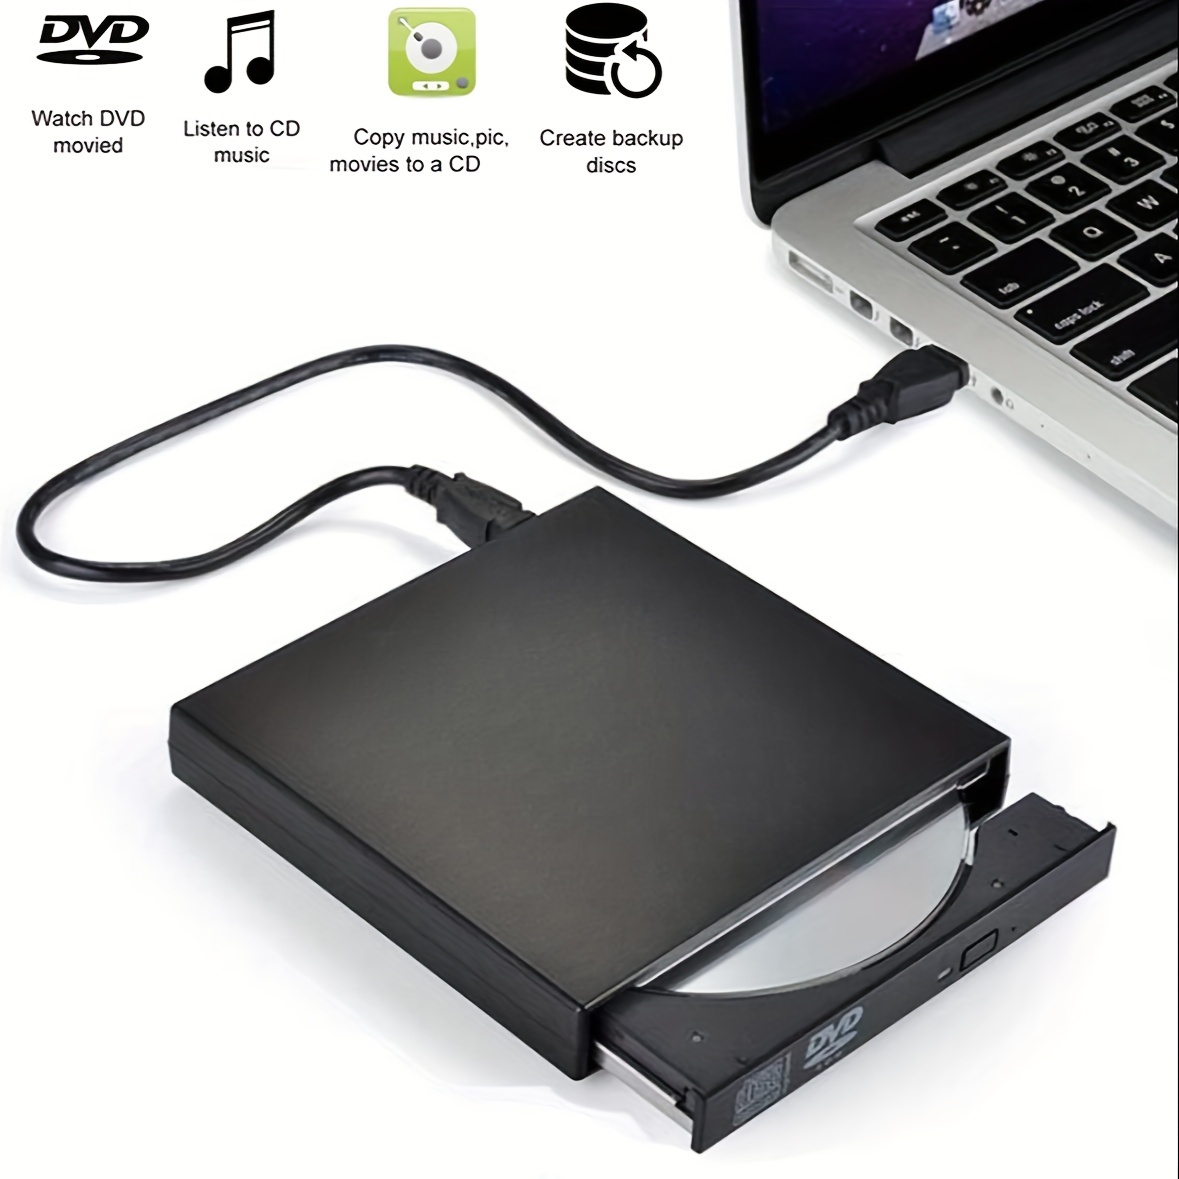 Macbook Pro Air Mac Pc Ordinateur portable Usb Emplacement externe dans le  graveur de lecteur cd / dvd